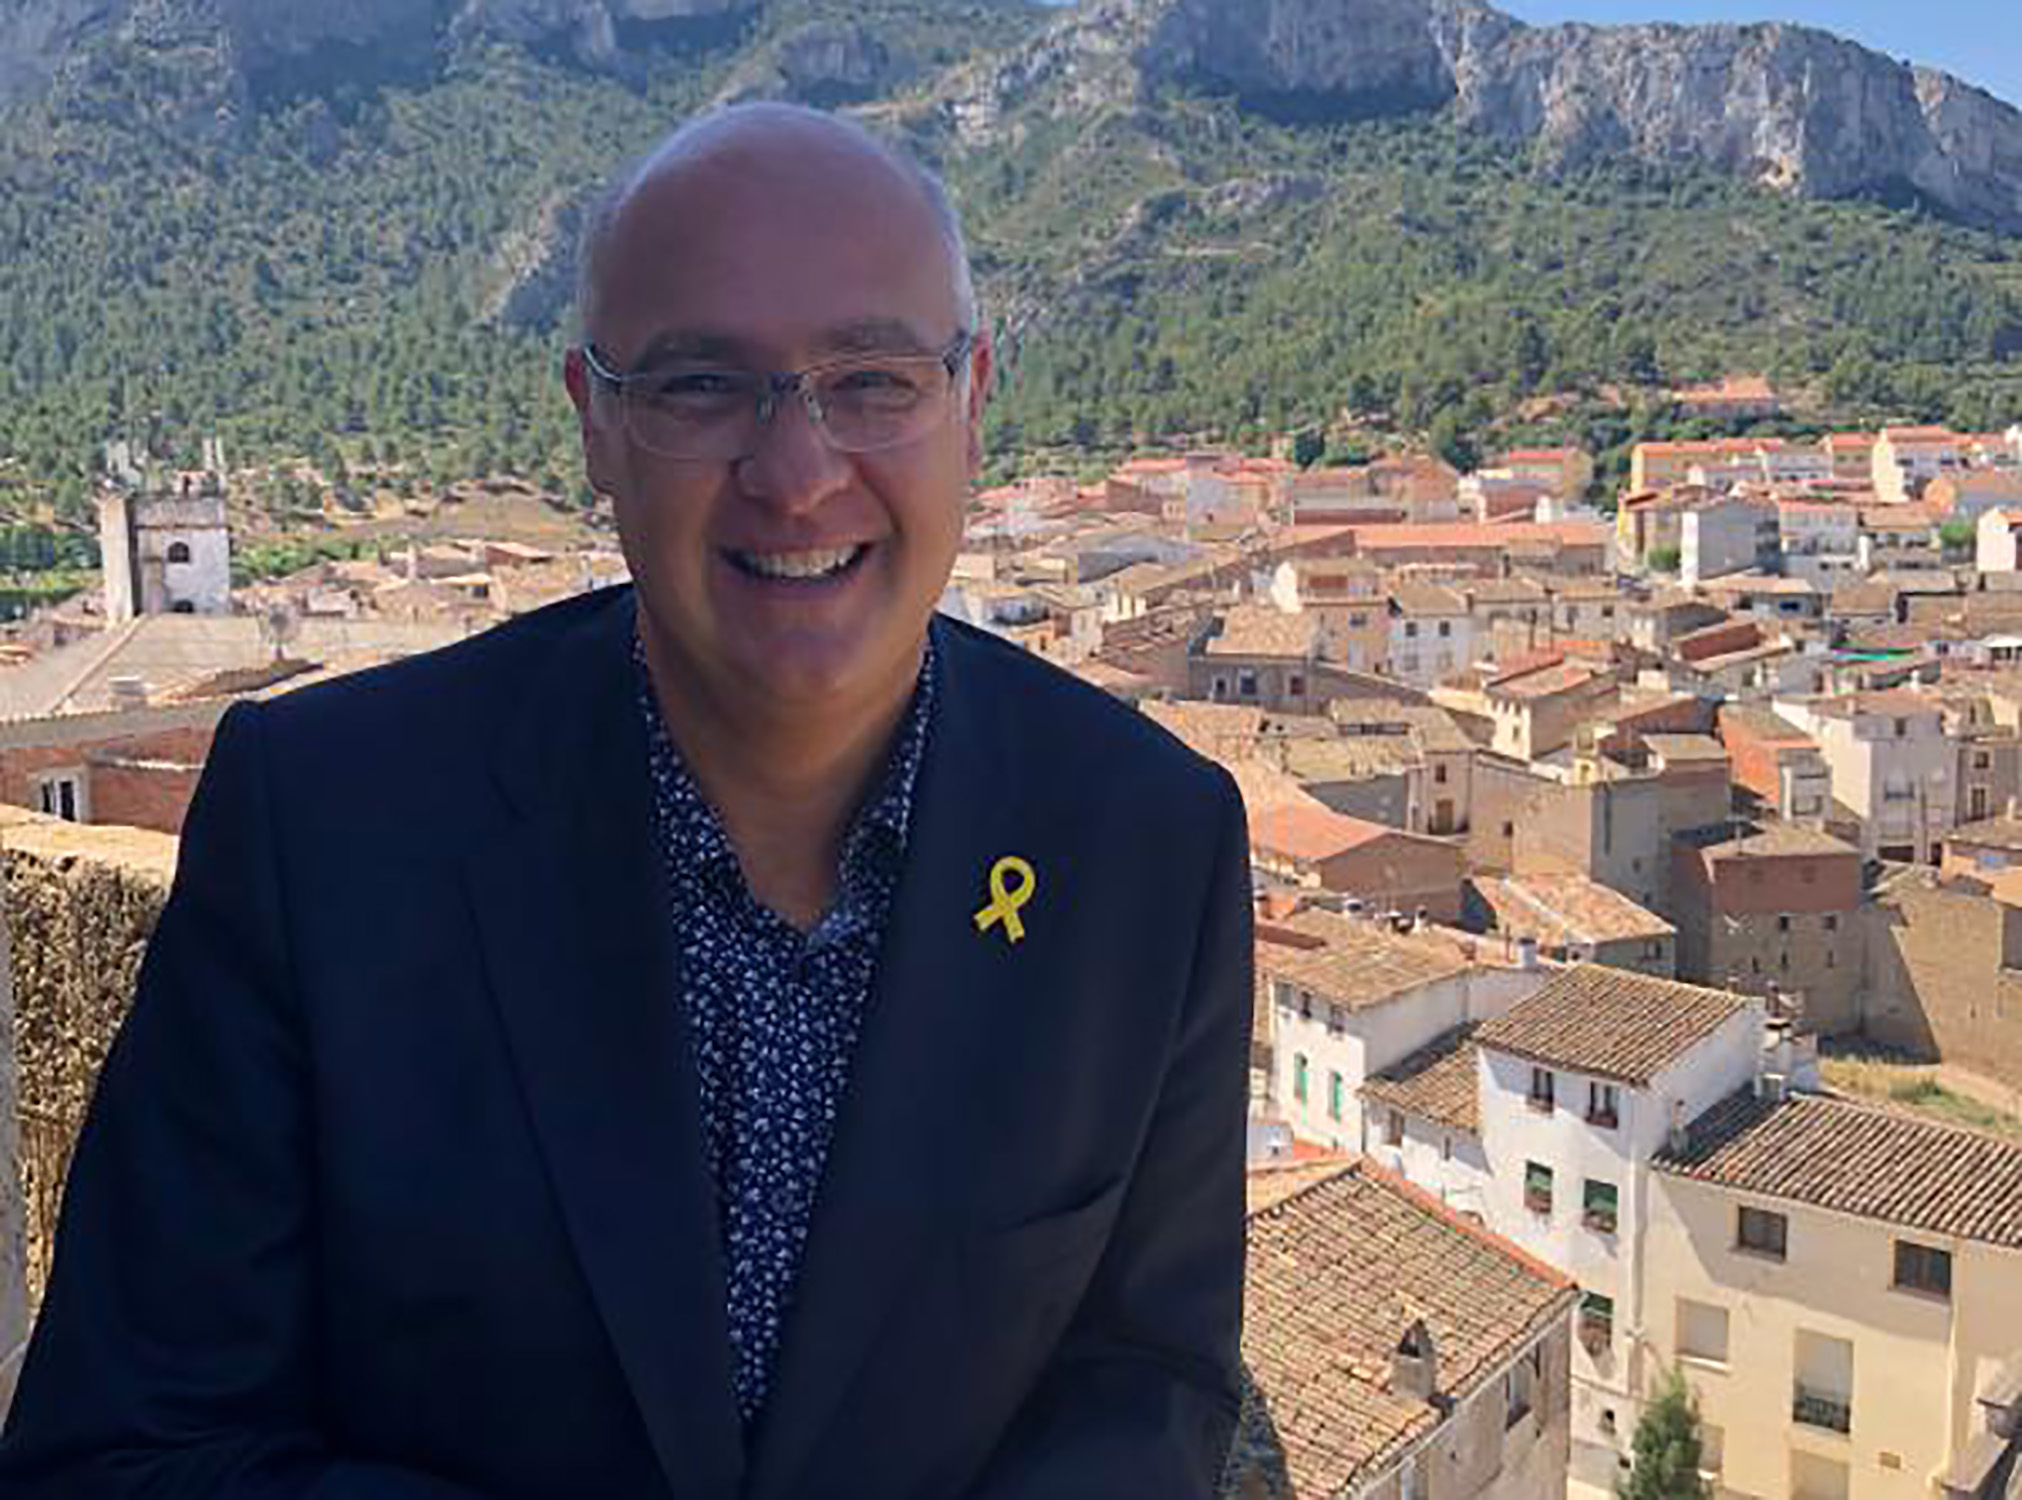 Mor Jordi Jardí, exdirector general de Seguretat i exalcalde de Tivissa, als 58 anys